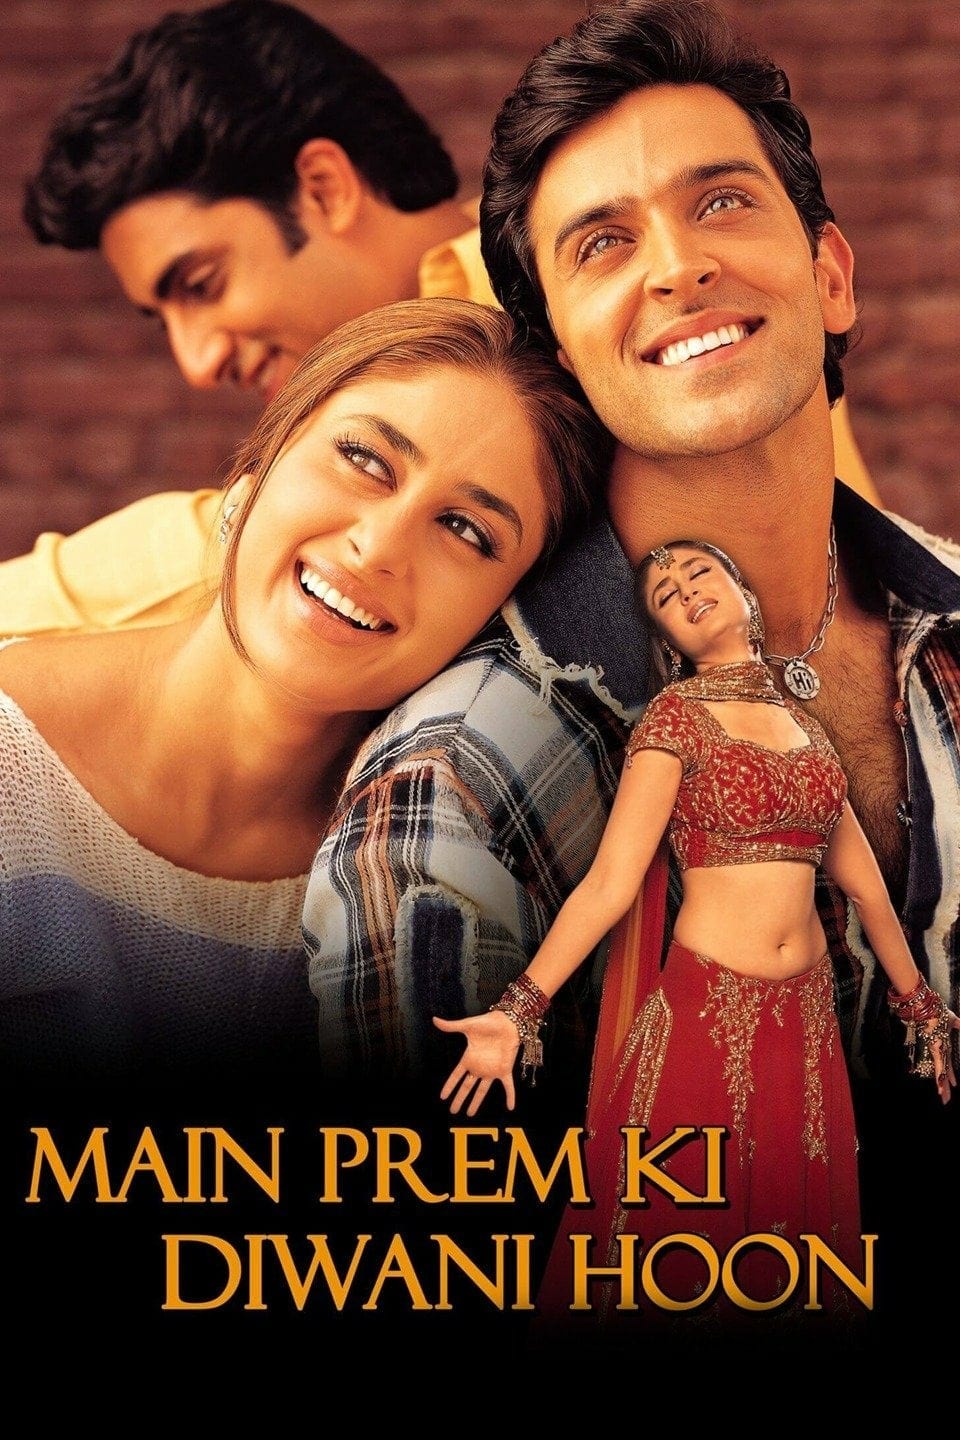 Poster for the movie "Main Prem Ki Diwani Hoon"